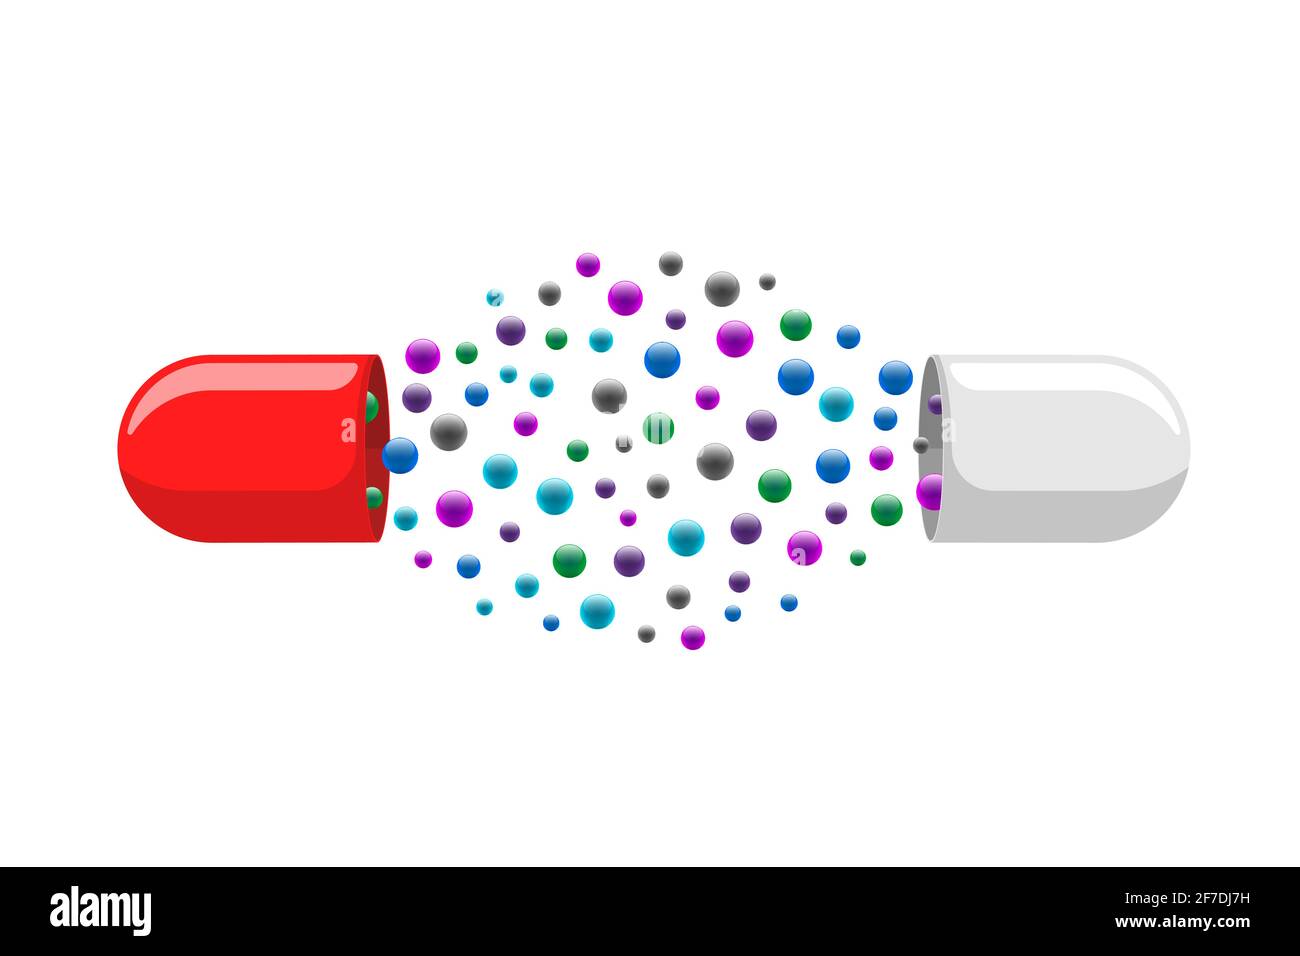 Medizinische Kapsel Pille geöffnet mit vielen bunten Molekülen. Medizin Medikament Vitamin verbessern Gesundheitskonzept. Rot und weiß pharmazeutischen Antibiotika Hälften Struktur mit Partikeln Vektor eps Abbildung Stock Vektor